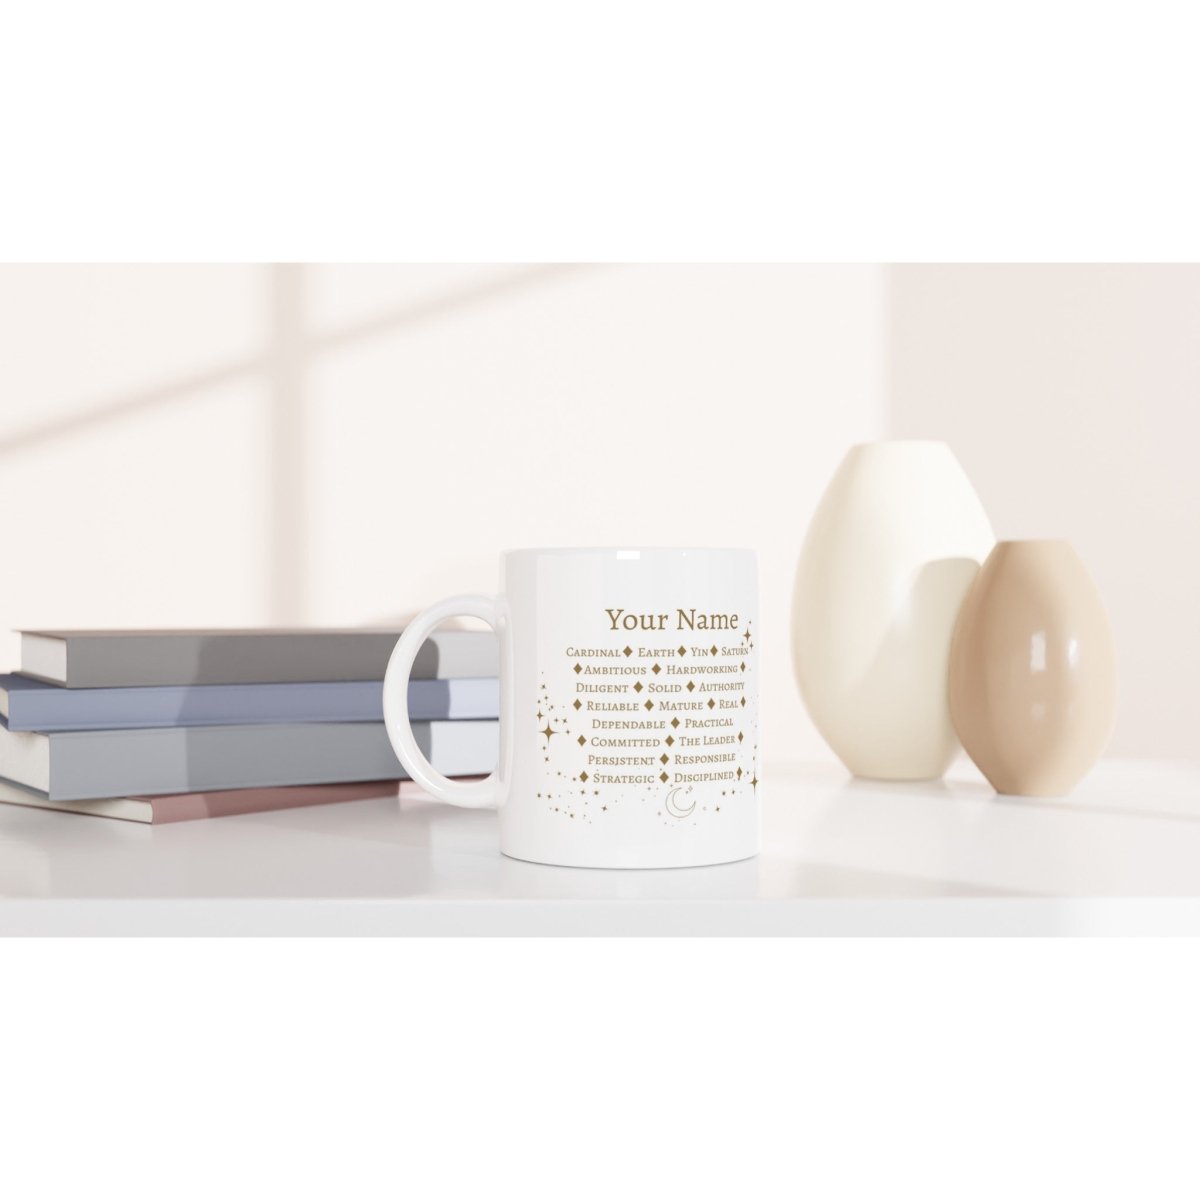 Capricorn Zodiac Personalized Mug - White 11oz Ceramic Mug - Astrology House